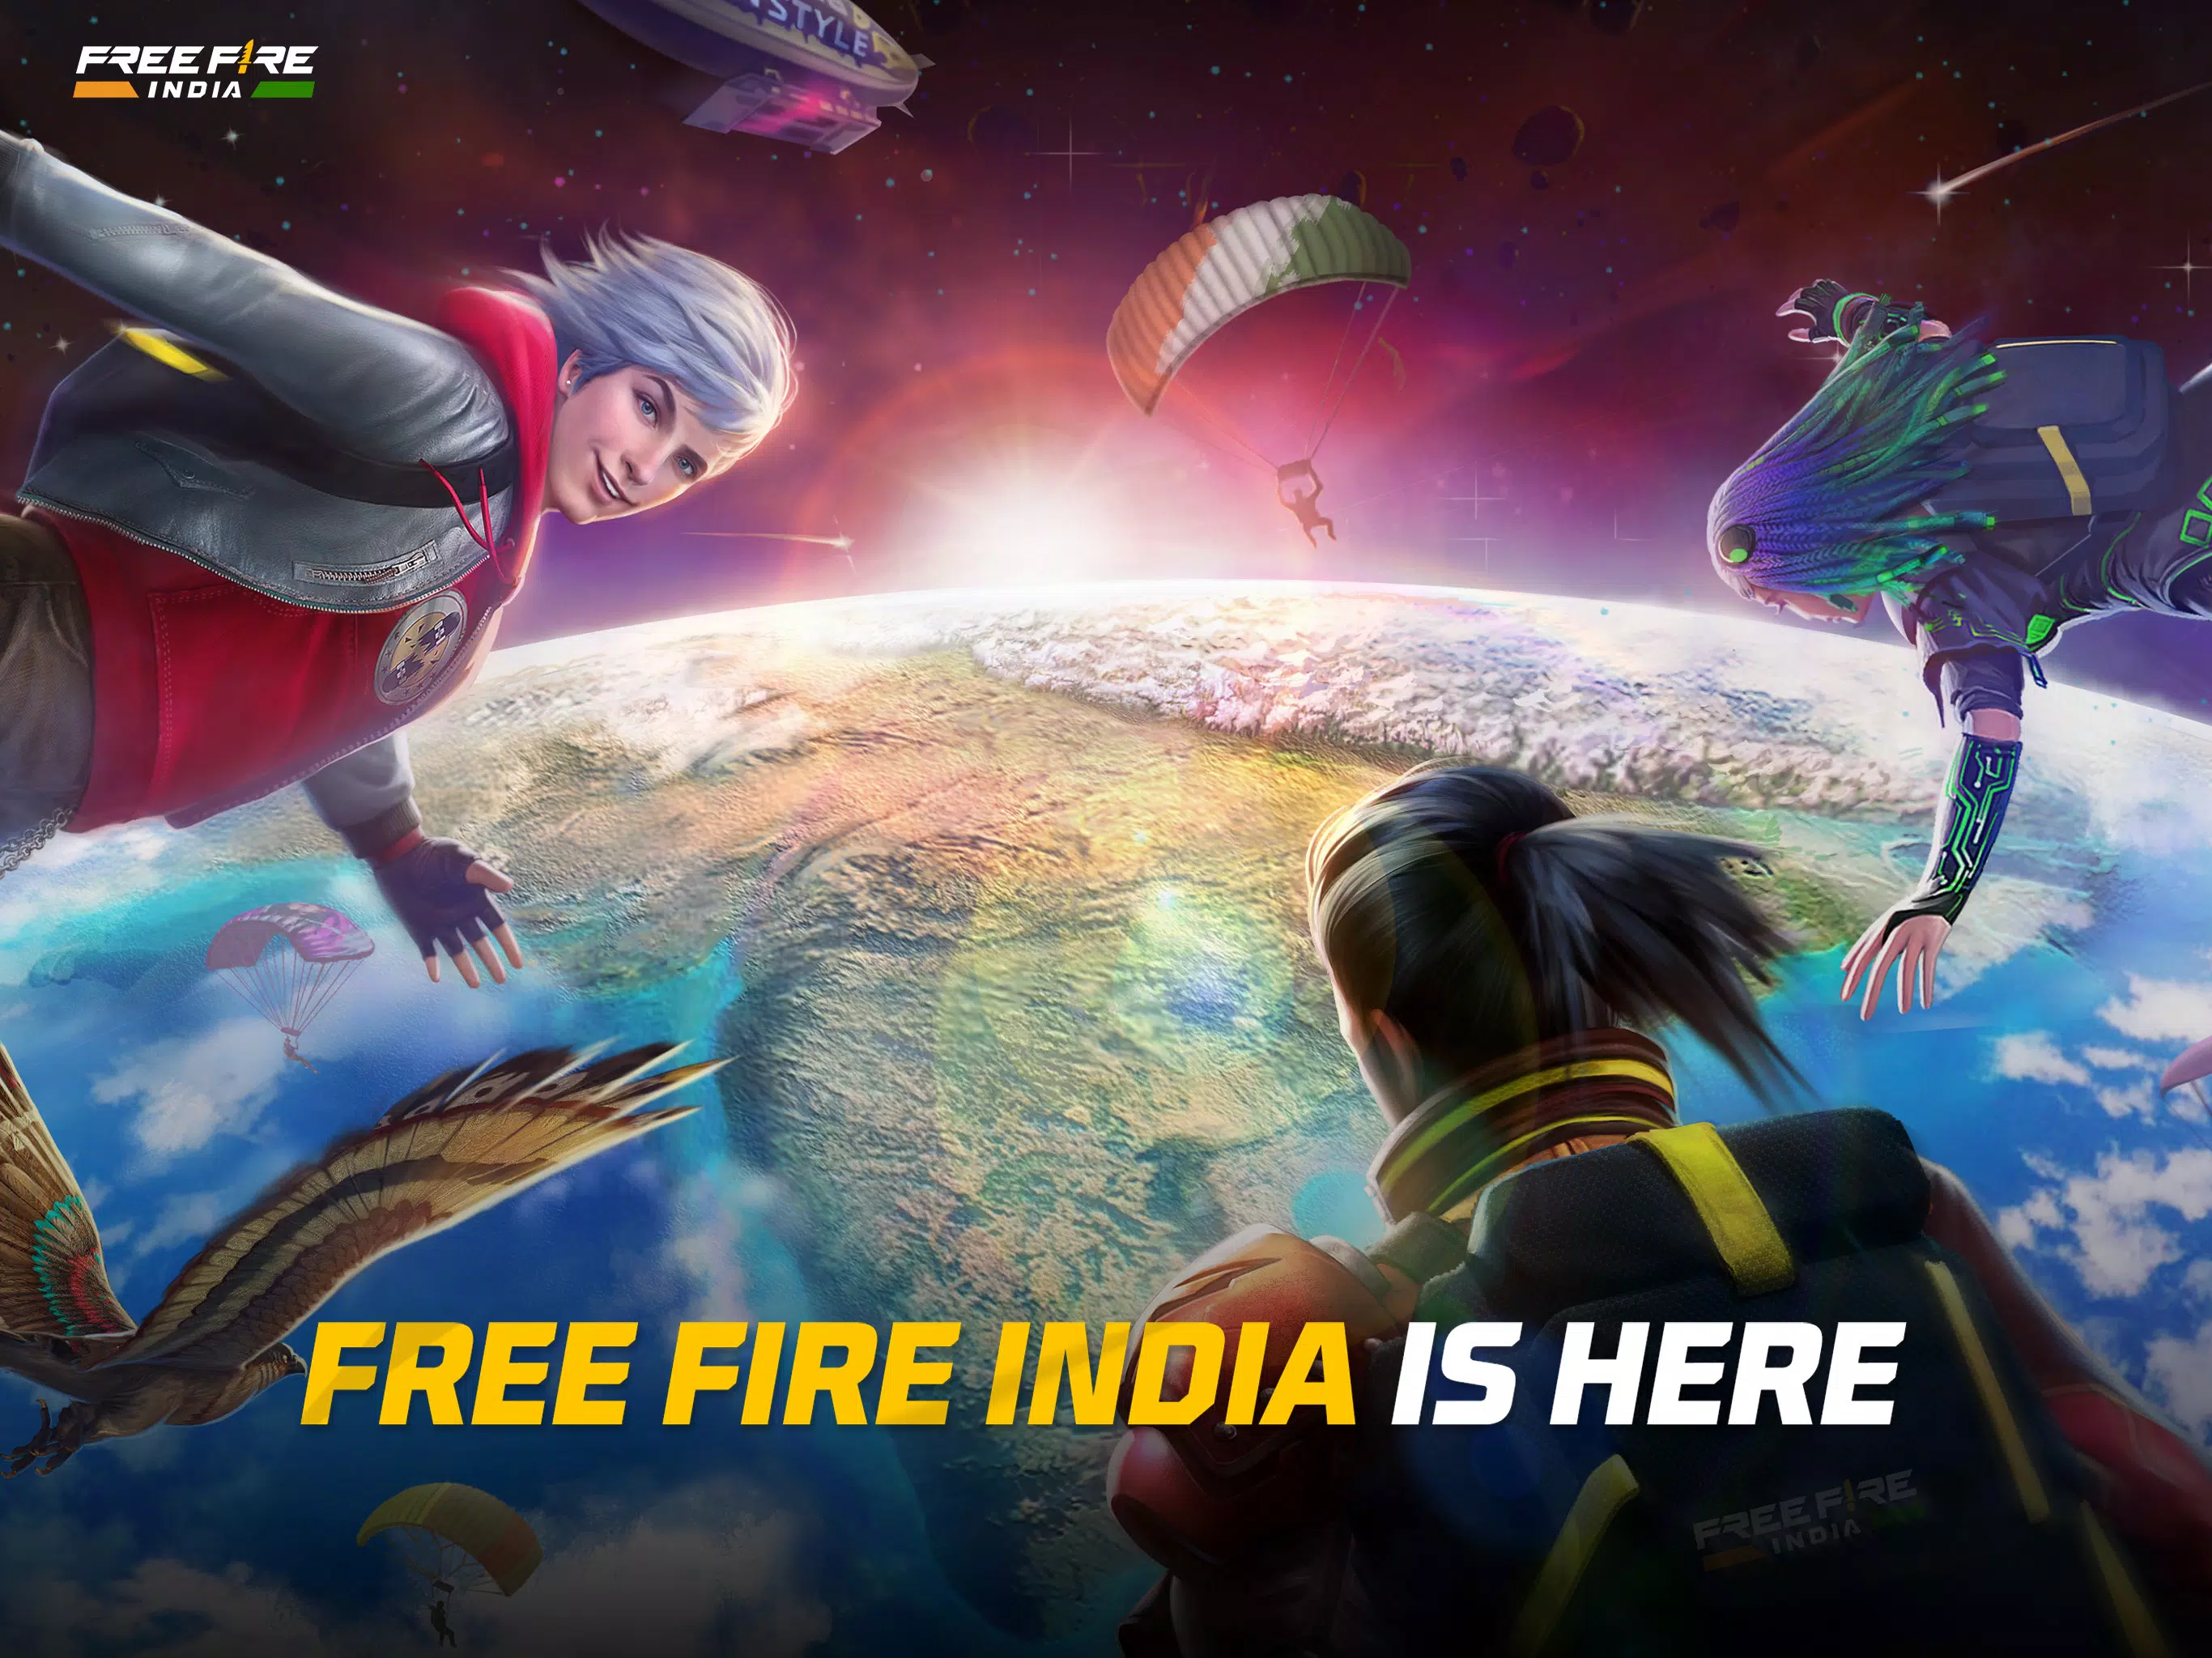 Download APK do Free Fire atualizado para Android e iOS